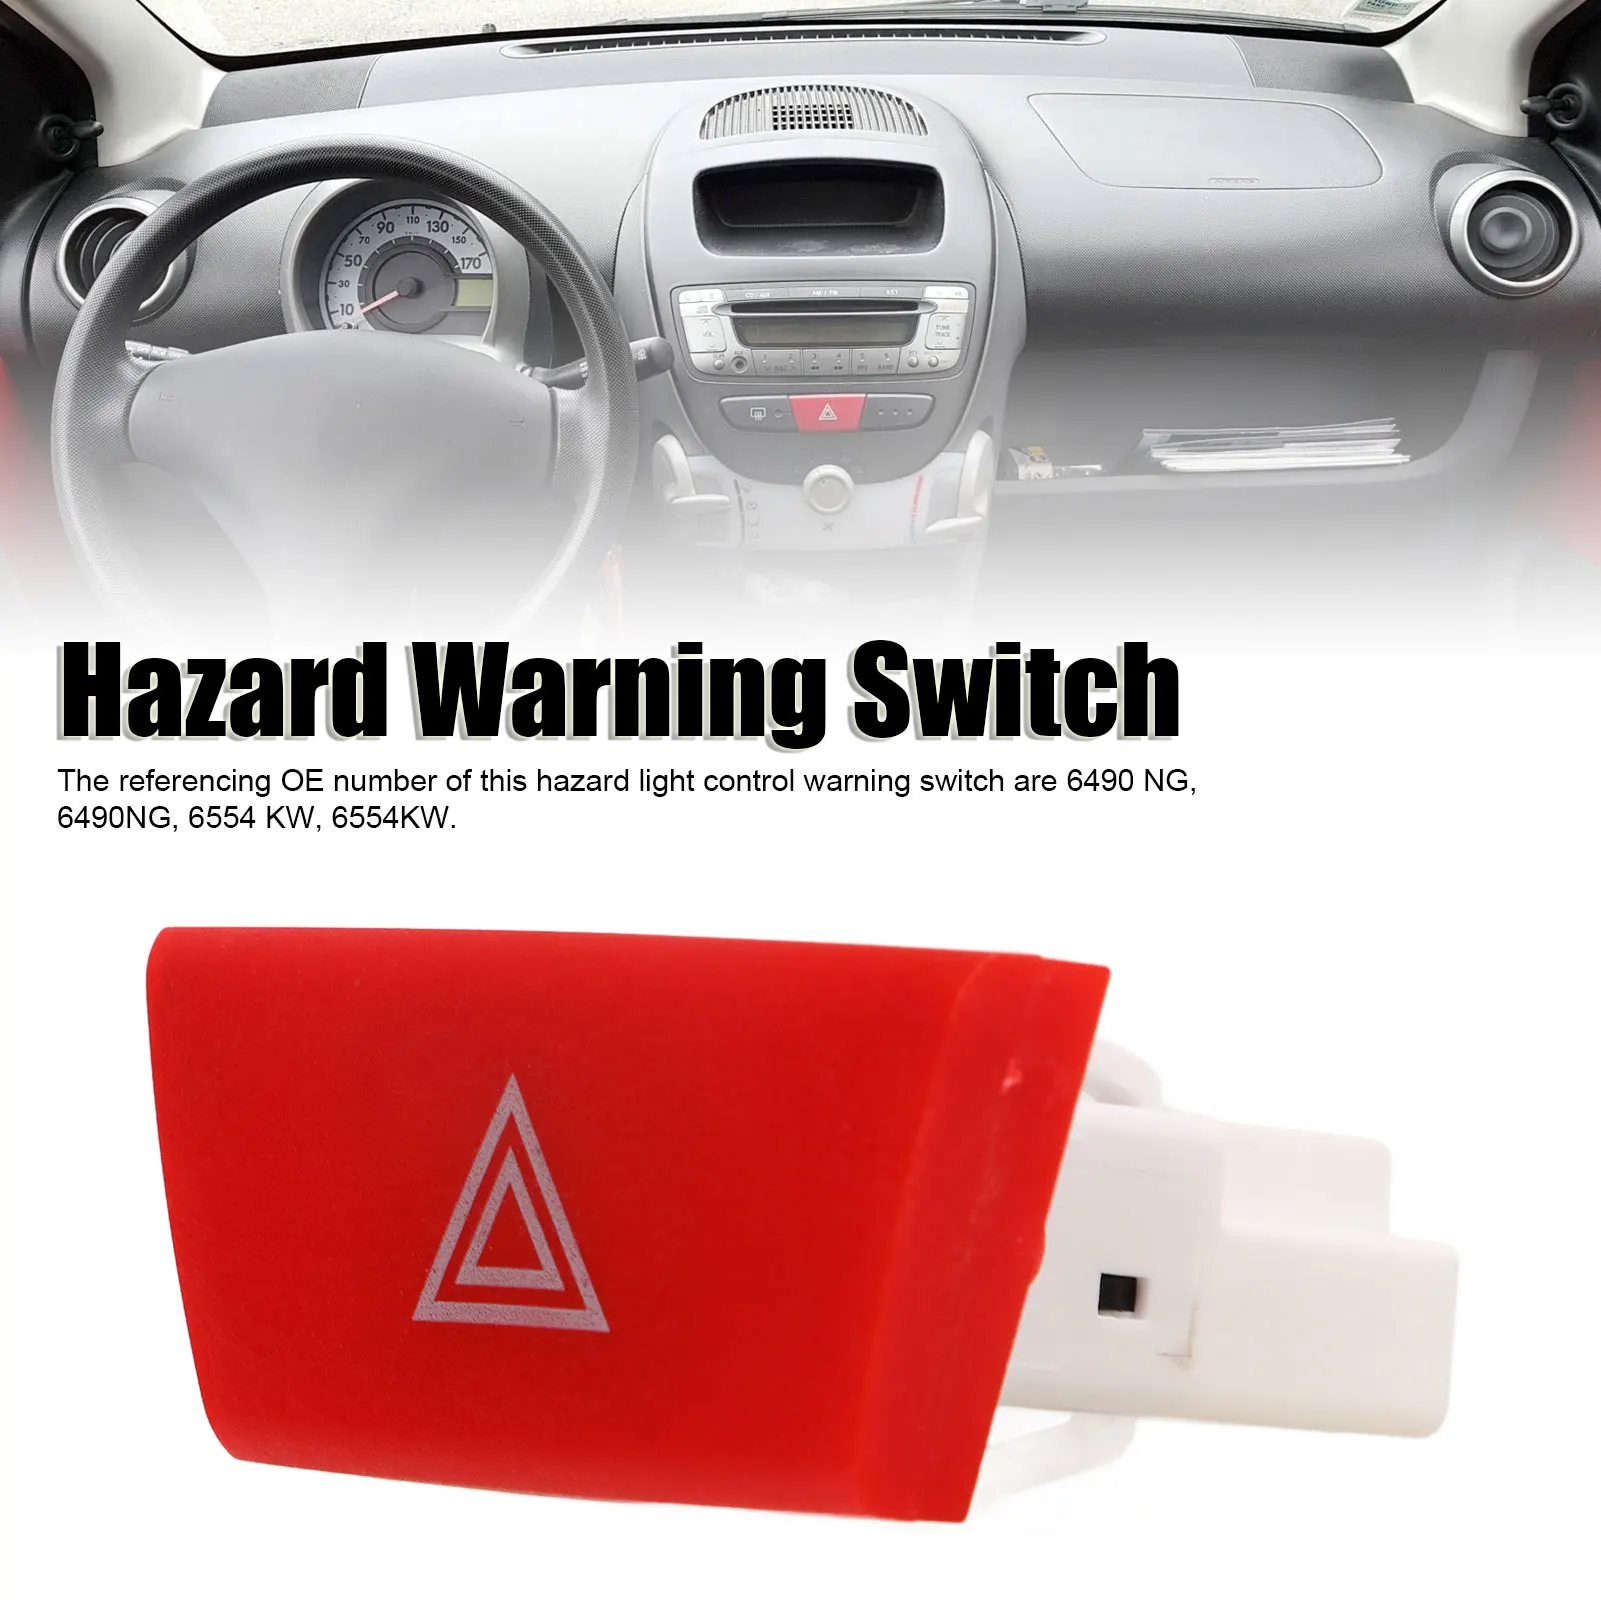 6490.NG Hazard Warning Switch For Peugeot 107 C1 Aygo Mk1 2005-2014 Hazard  Light Control Warning Emergency Lamp Switch - AliExpress